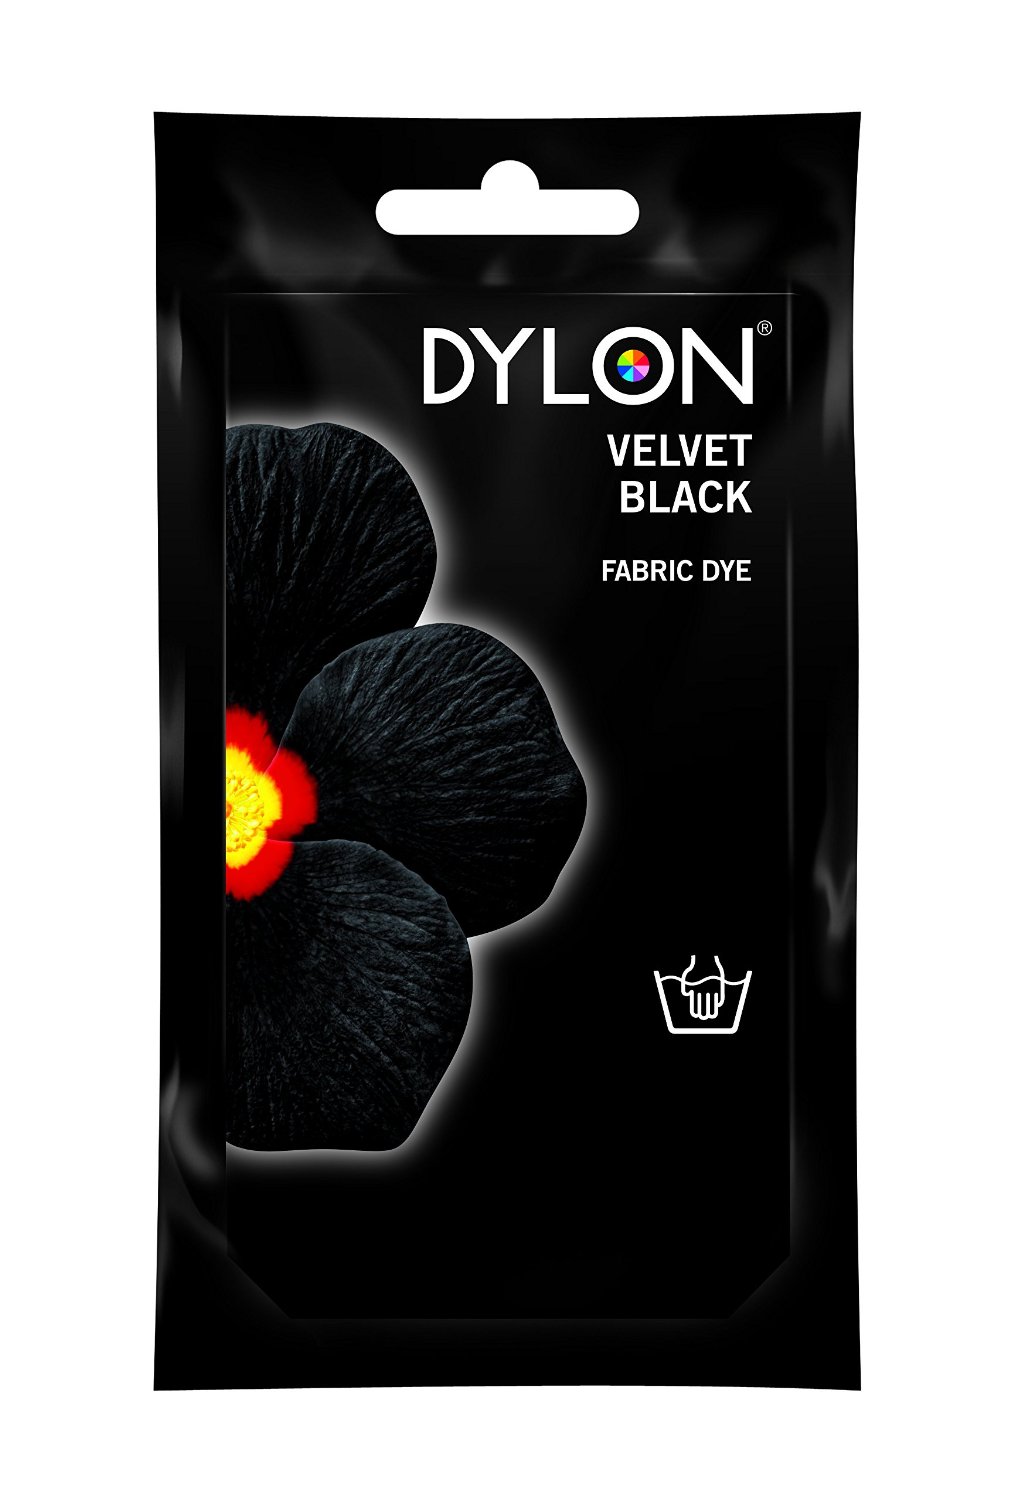 dylon velvet black fabric dye instructions